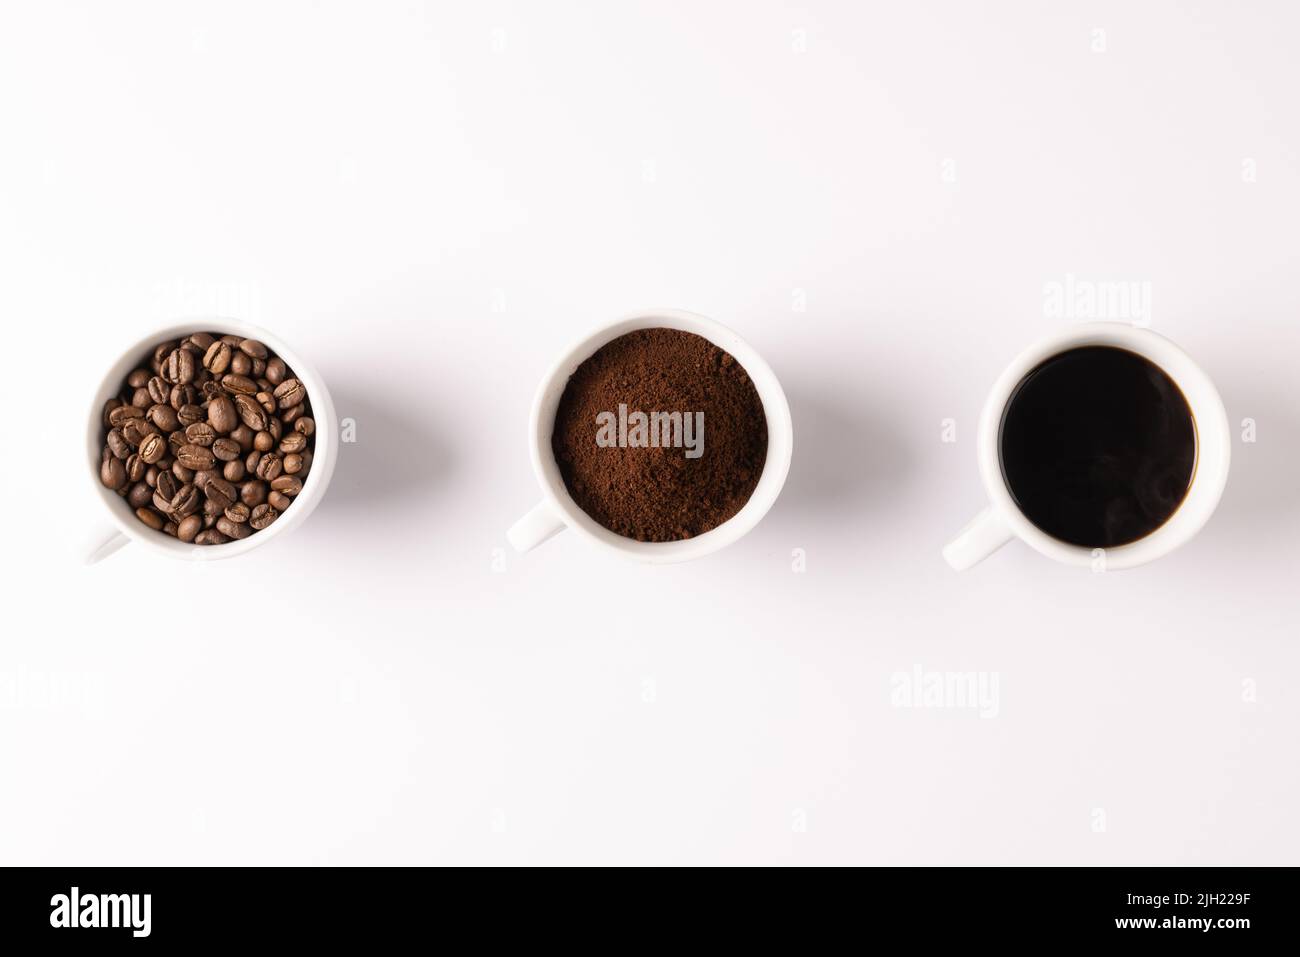 Immagine di tre tazze piene di caffè macinato, chicchi di caffè e caffè su sfondo bianco Foto Stock